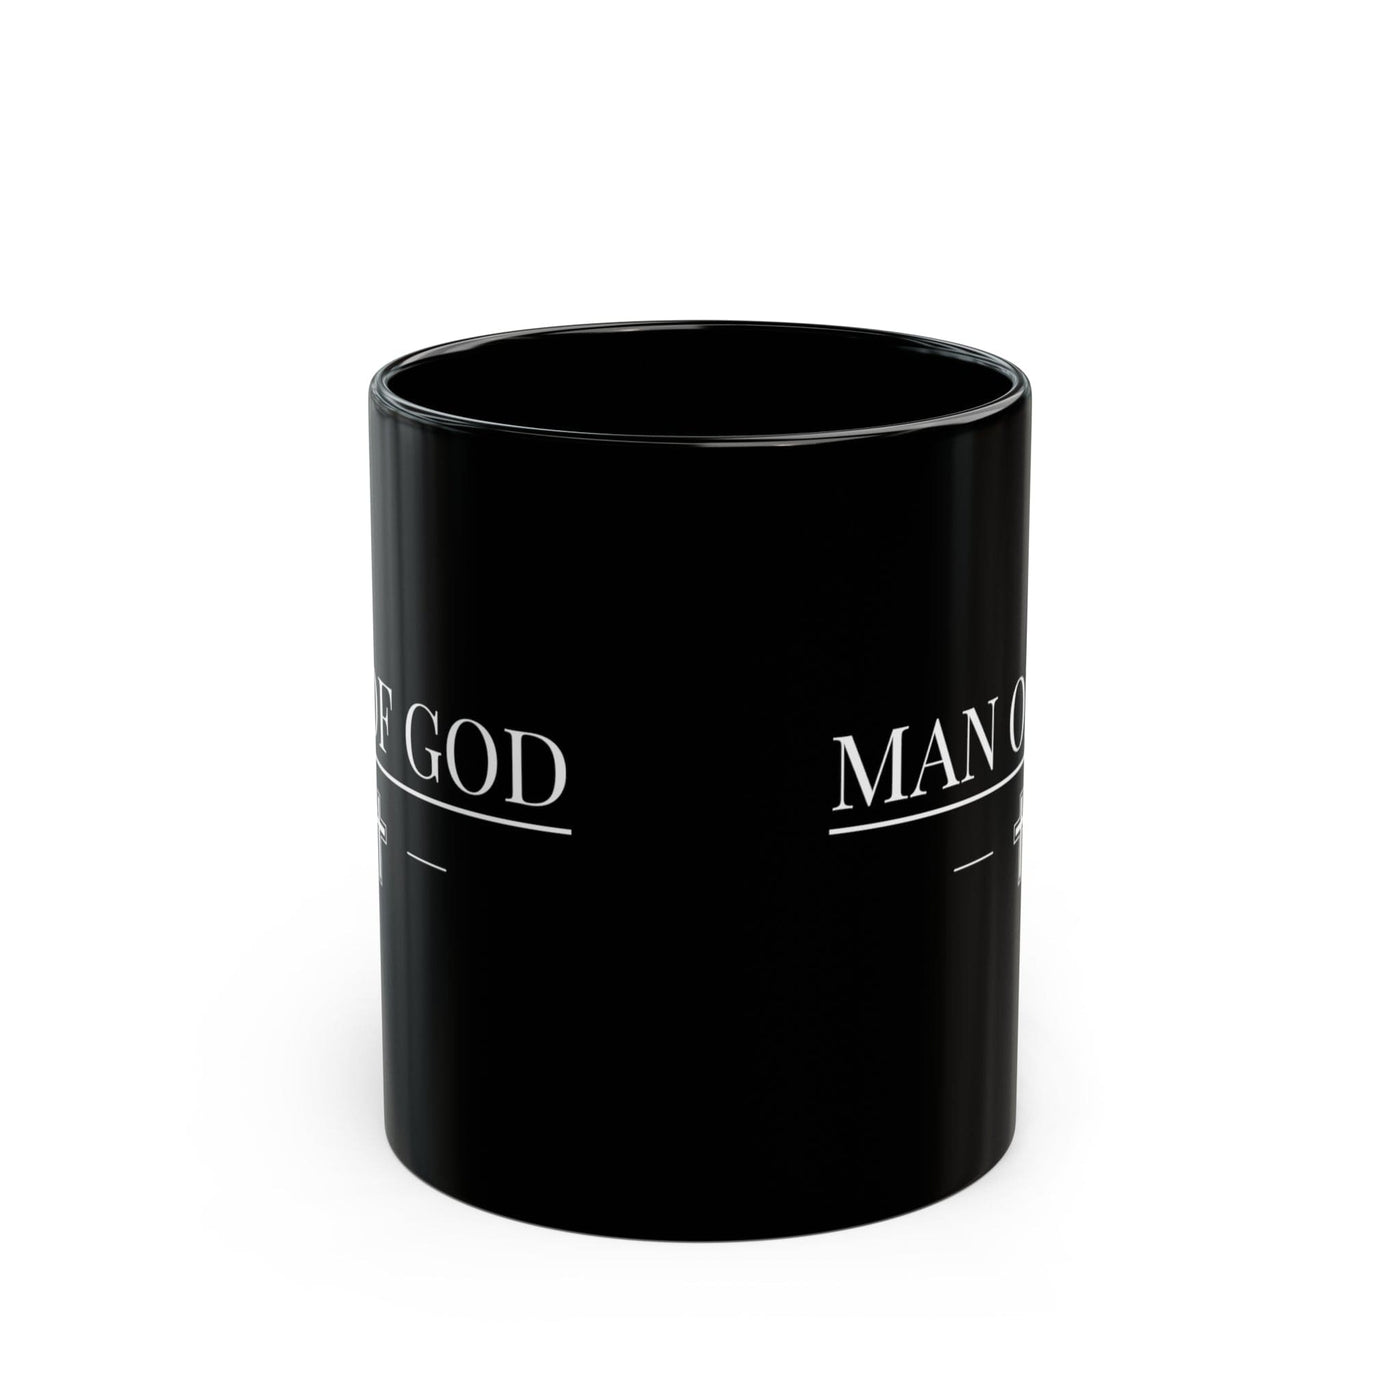 Black Ceramic Mug - 11oz Man Of God Print